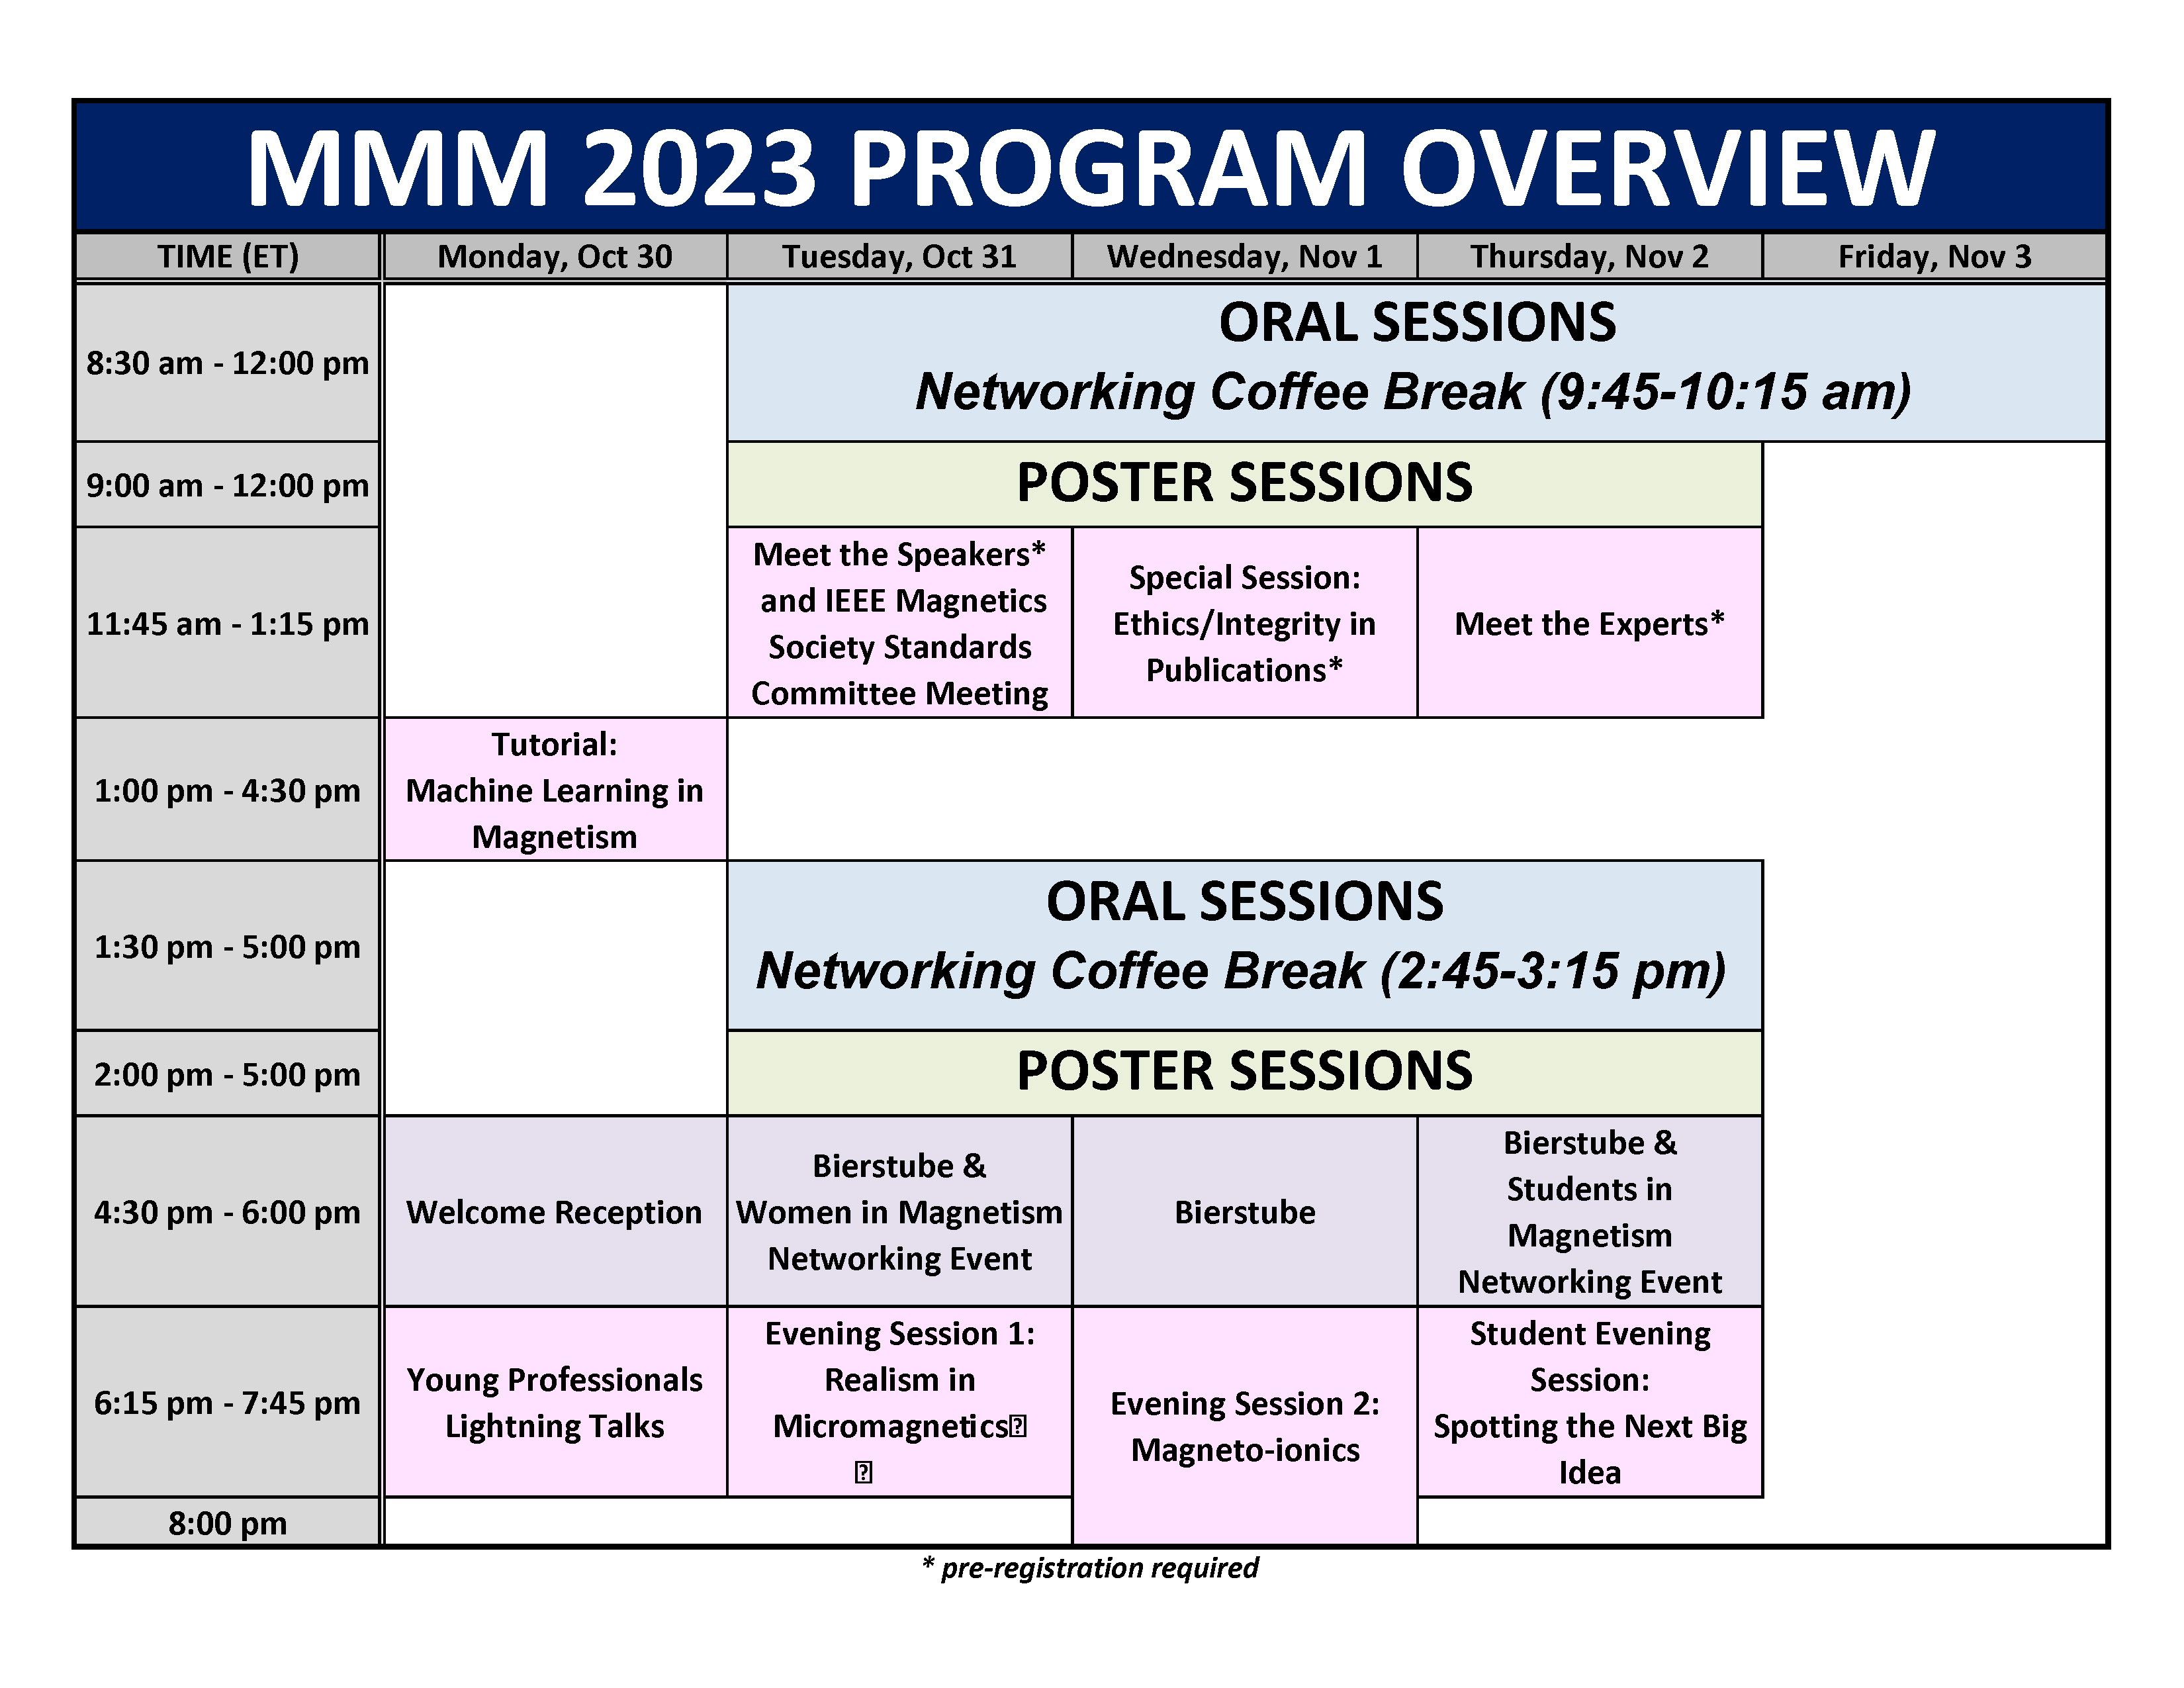 Program Schedule Overview